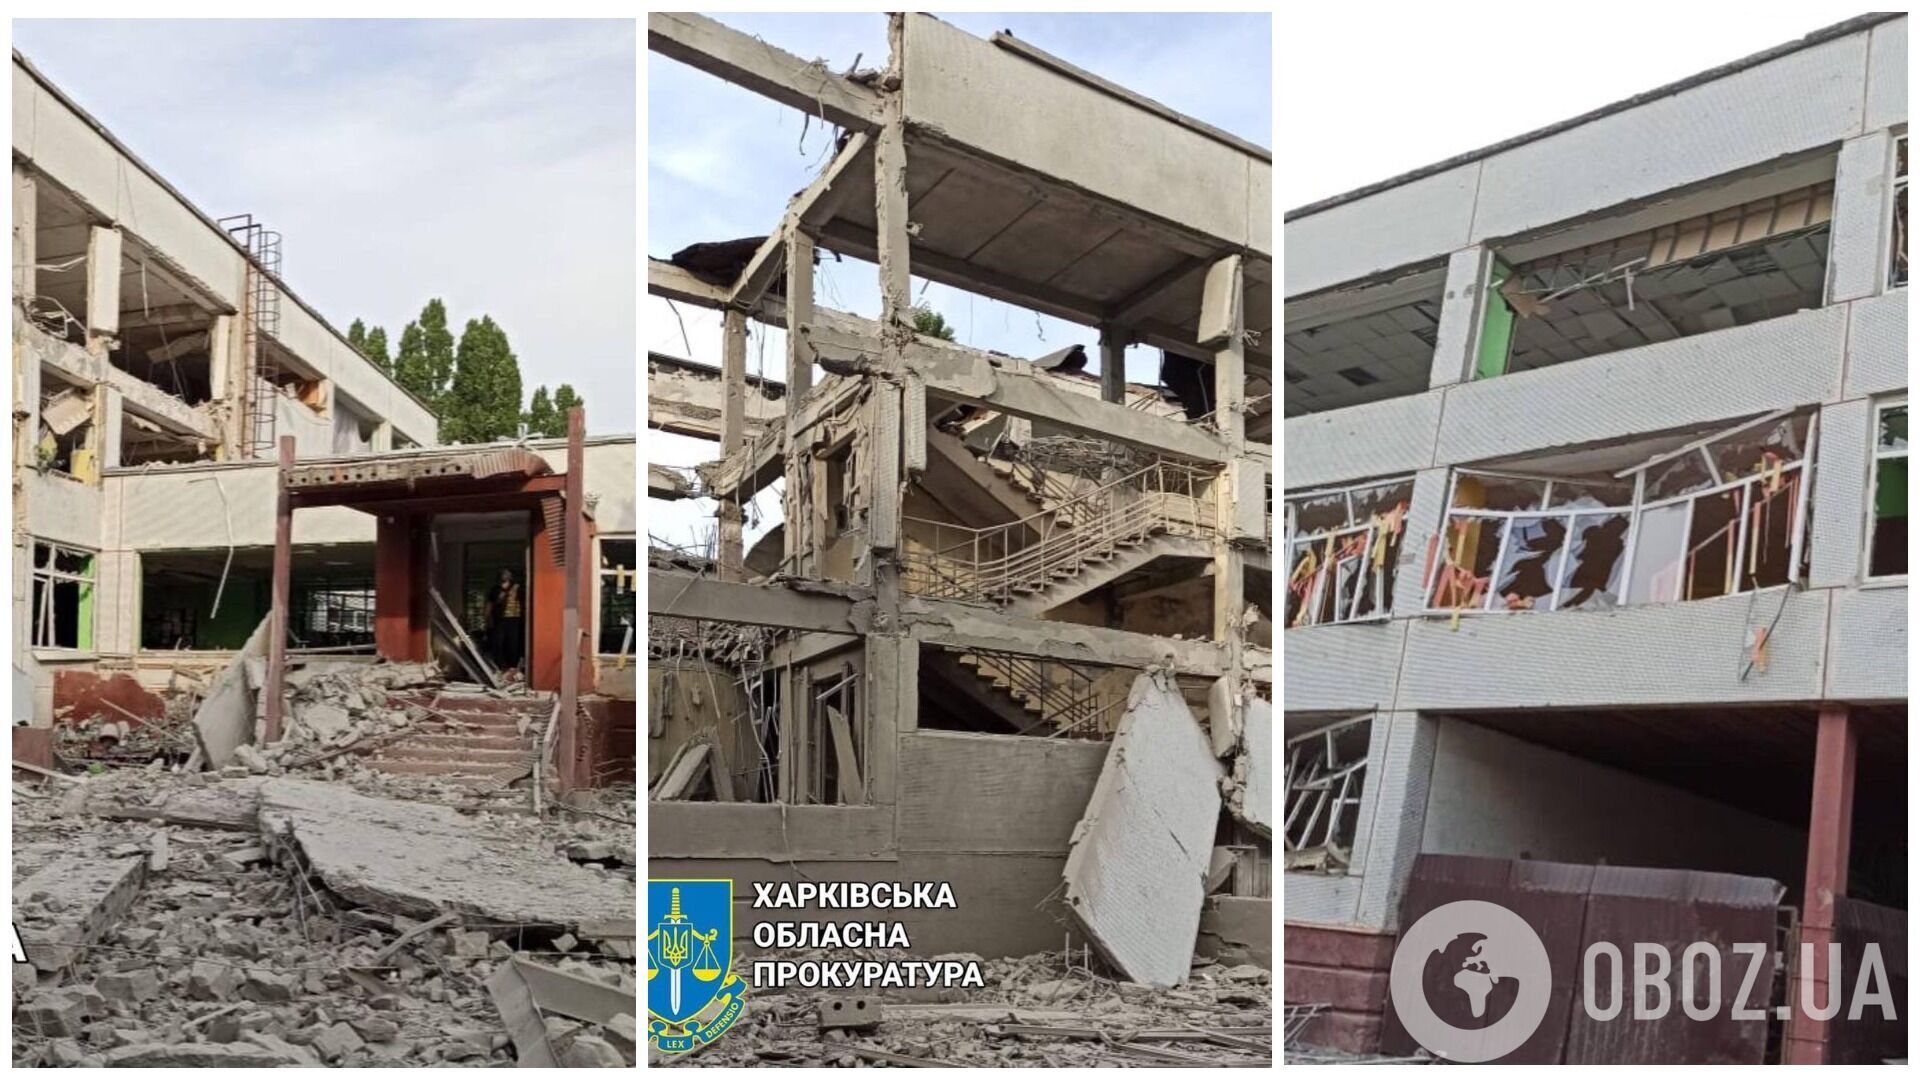 Заплаканная Зарицкая из KAZKA поделилась воспоминаниями о родной гимназии, которую уничтожили оккупанты